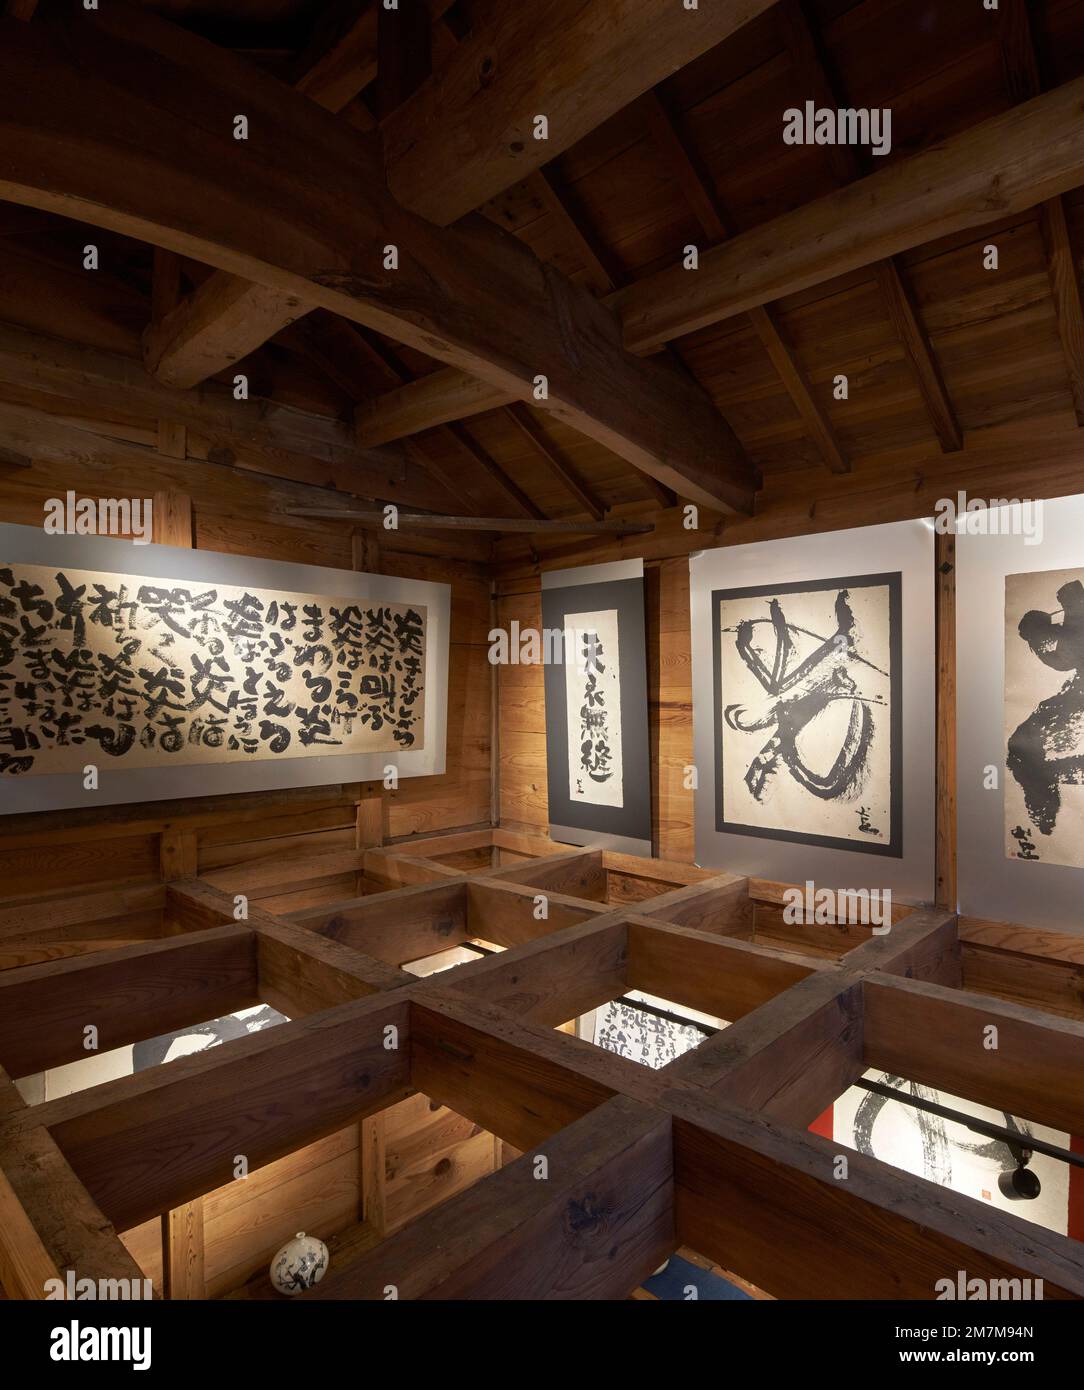 Galerieeinrichtung im oberen Stockwerk. Kura-Galerie für Tokiko Kato, Kamogawa, Japan. Architekt: Atelier Bow Wow, 2022. Stockfoto